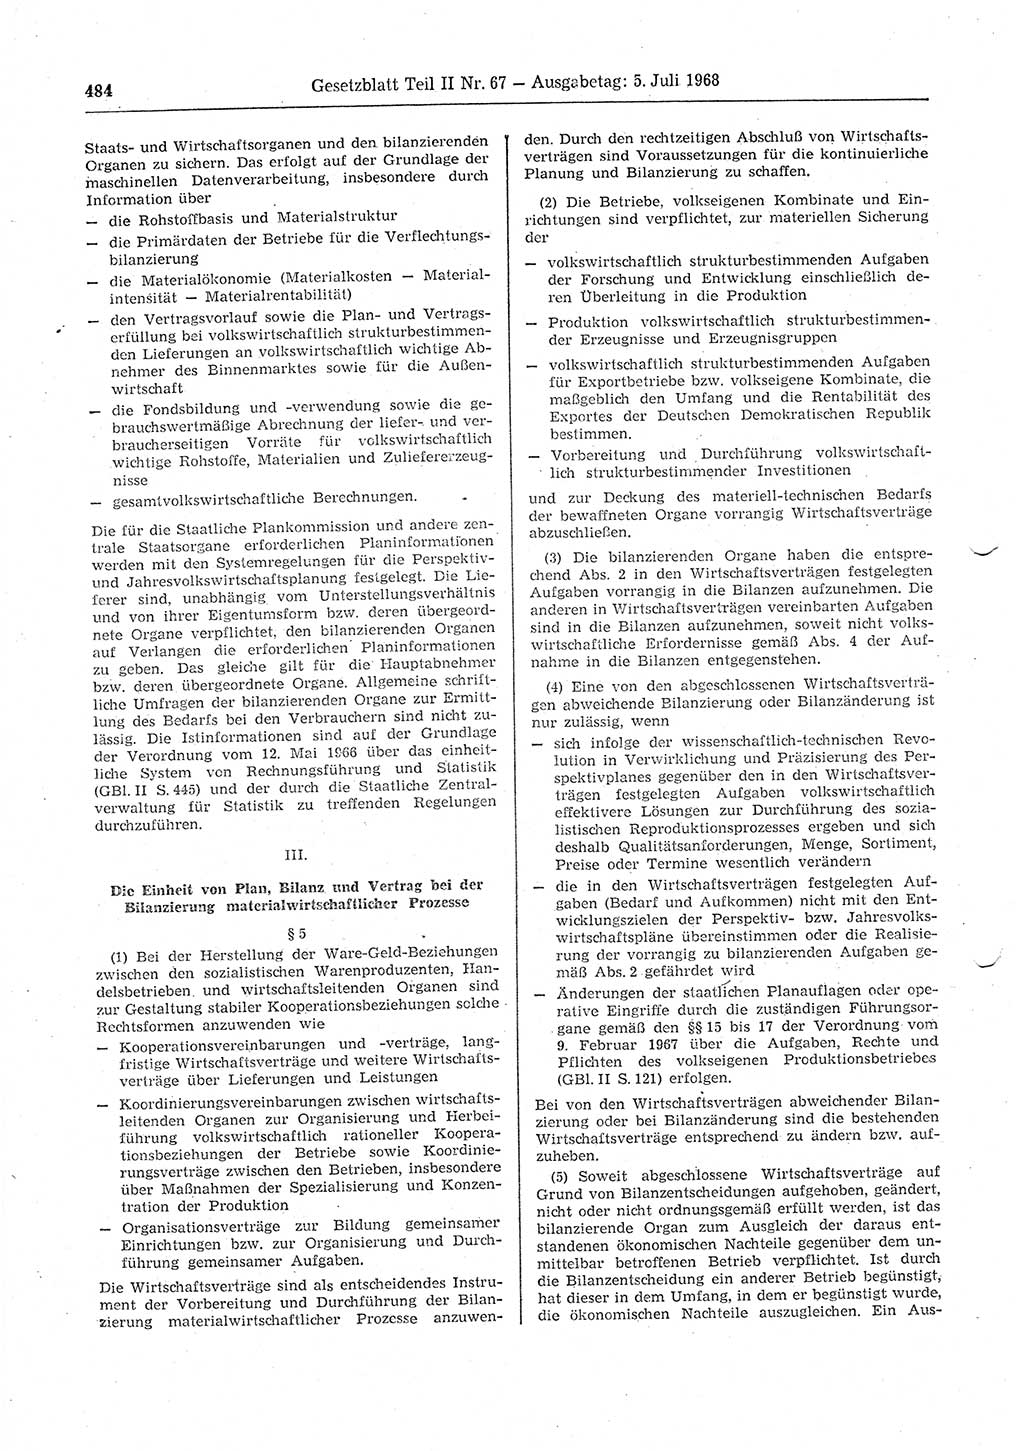 Gesetzblatt (GBl.) der Deutschen Demokratischen Republik (DDR) Teil ⅠⅠ 1968, Seite 484 (GBl. DDR ⅠⅠ 1968, S. 484)